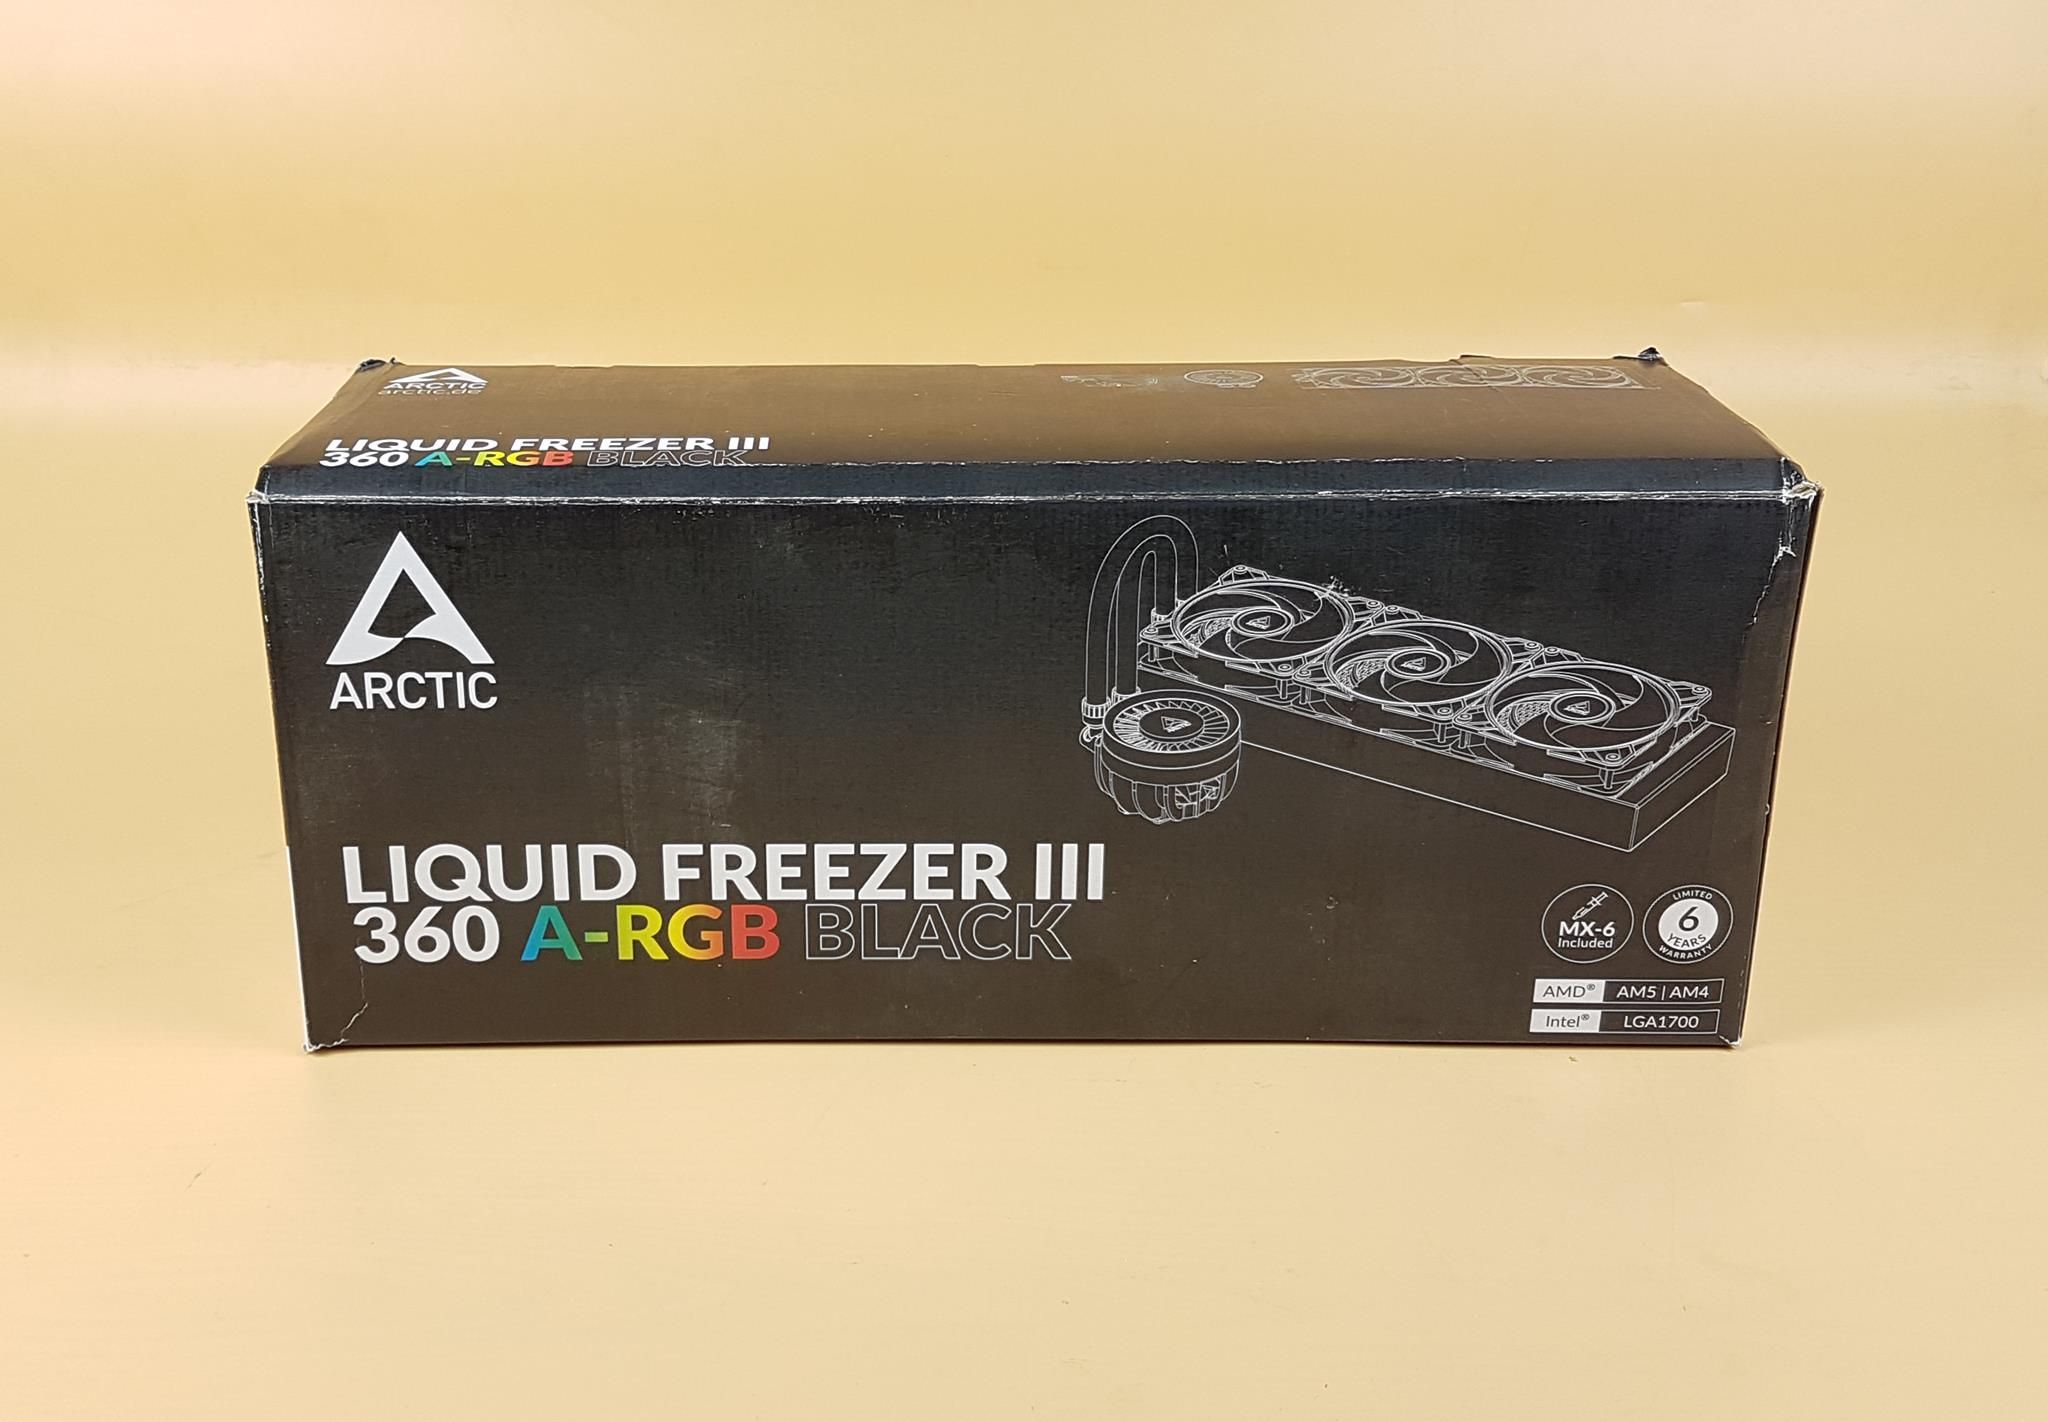 ARCTIC Liquid Freezer III 360 ARGB Black Packing Box 1